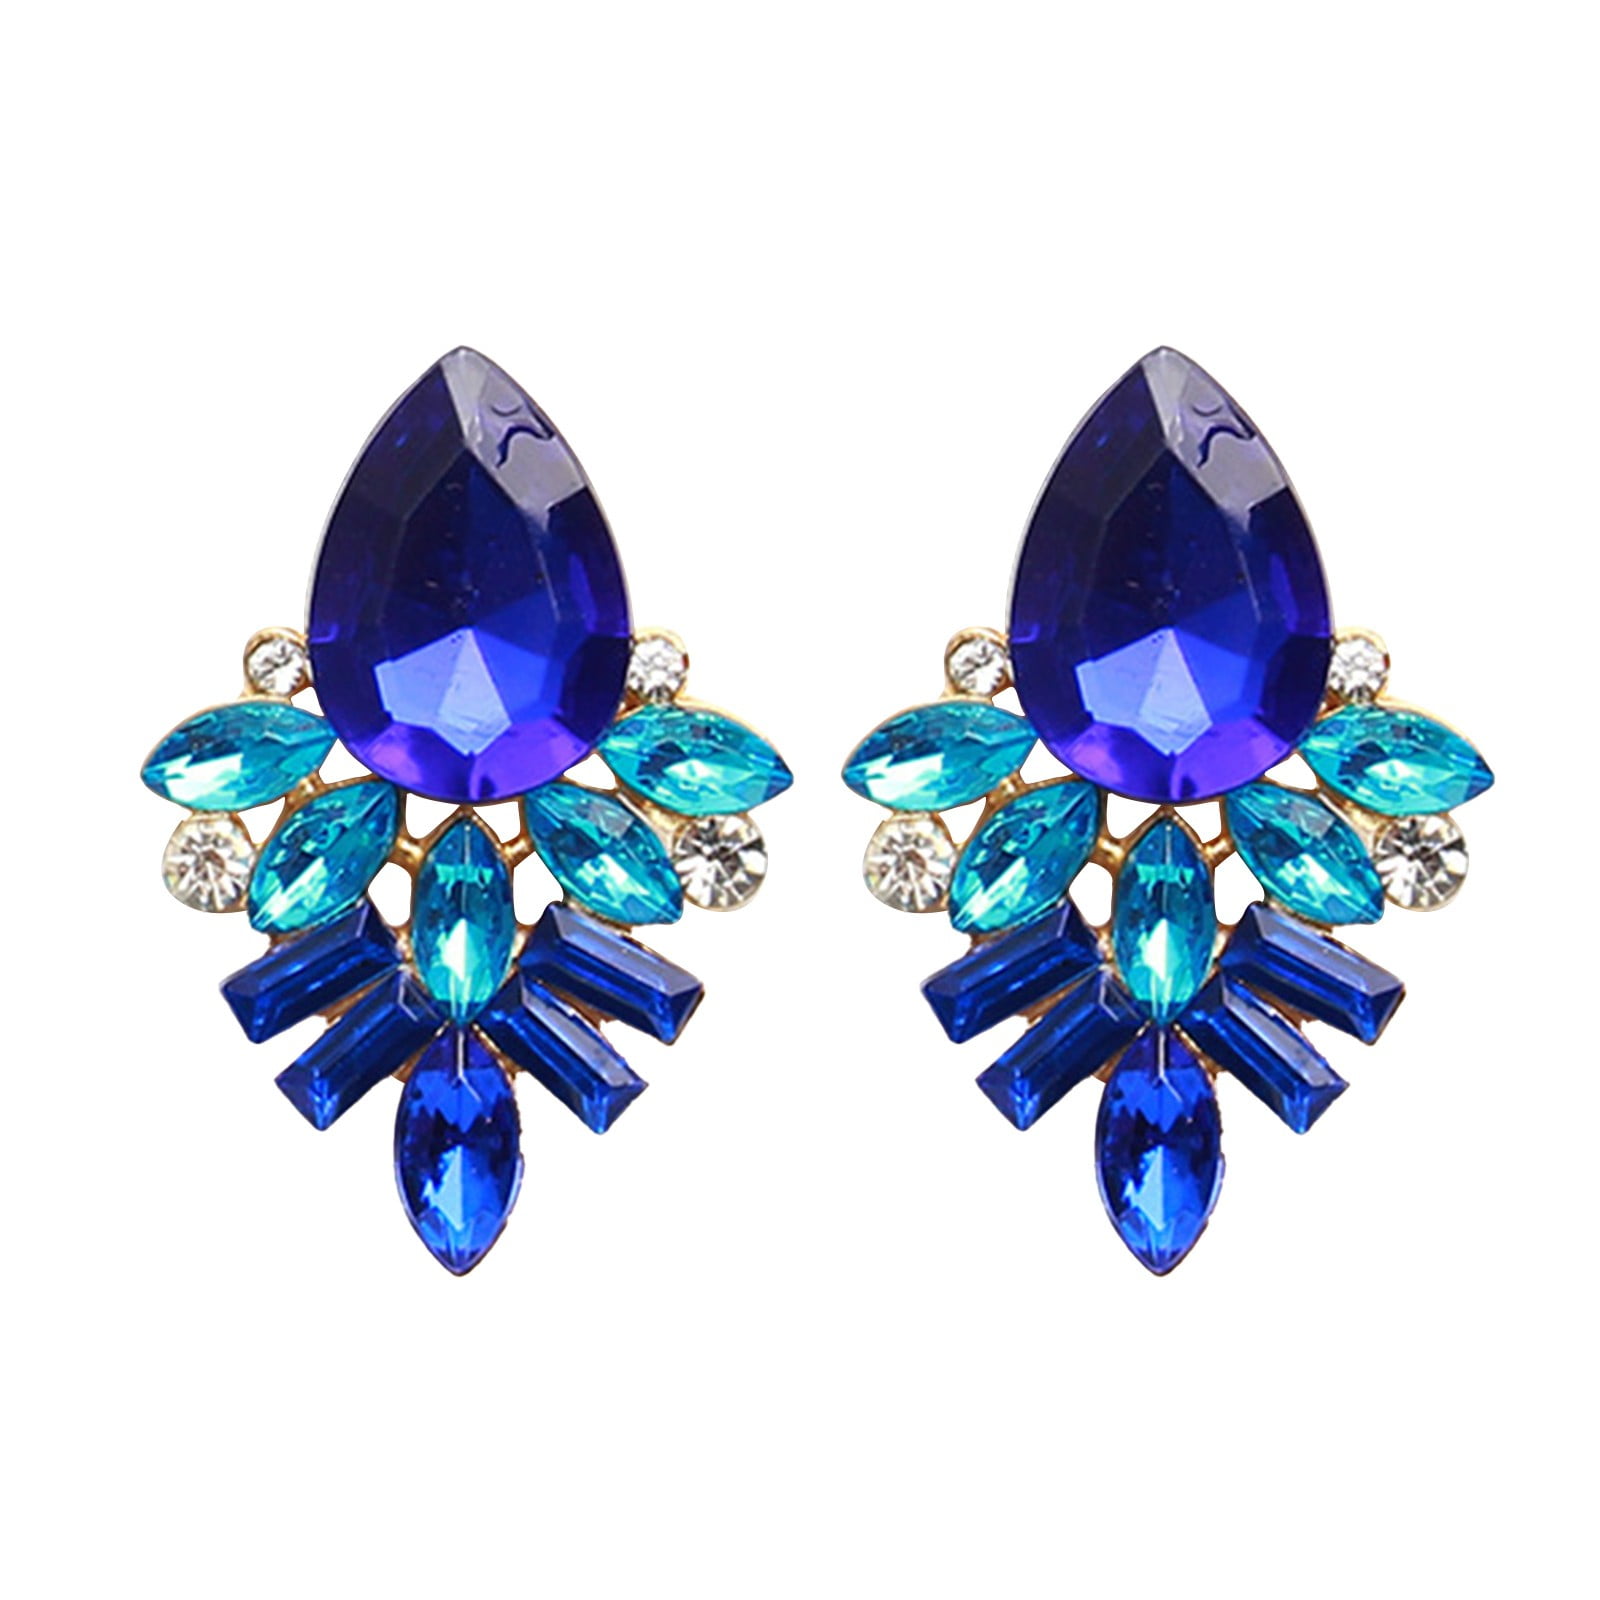 Vintage Women Rhinestone Crystal Symmetry Alloy Flower Ear Stud Earrings Jewelry